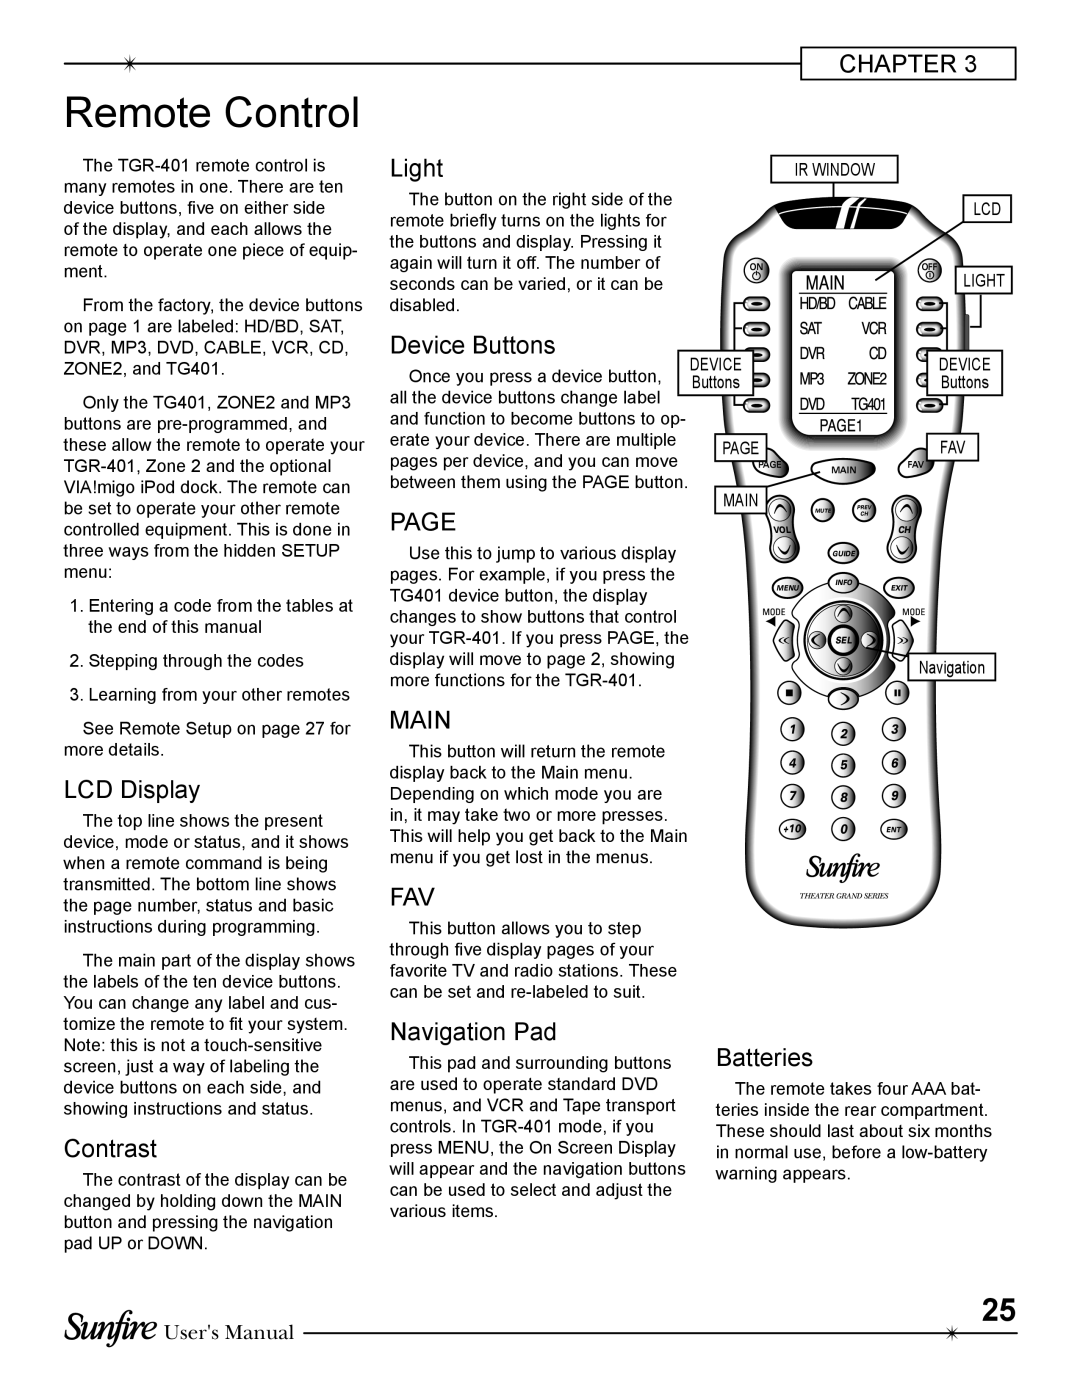 Sunfire TGR-401-230 manual Remote Control 